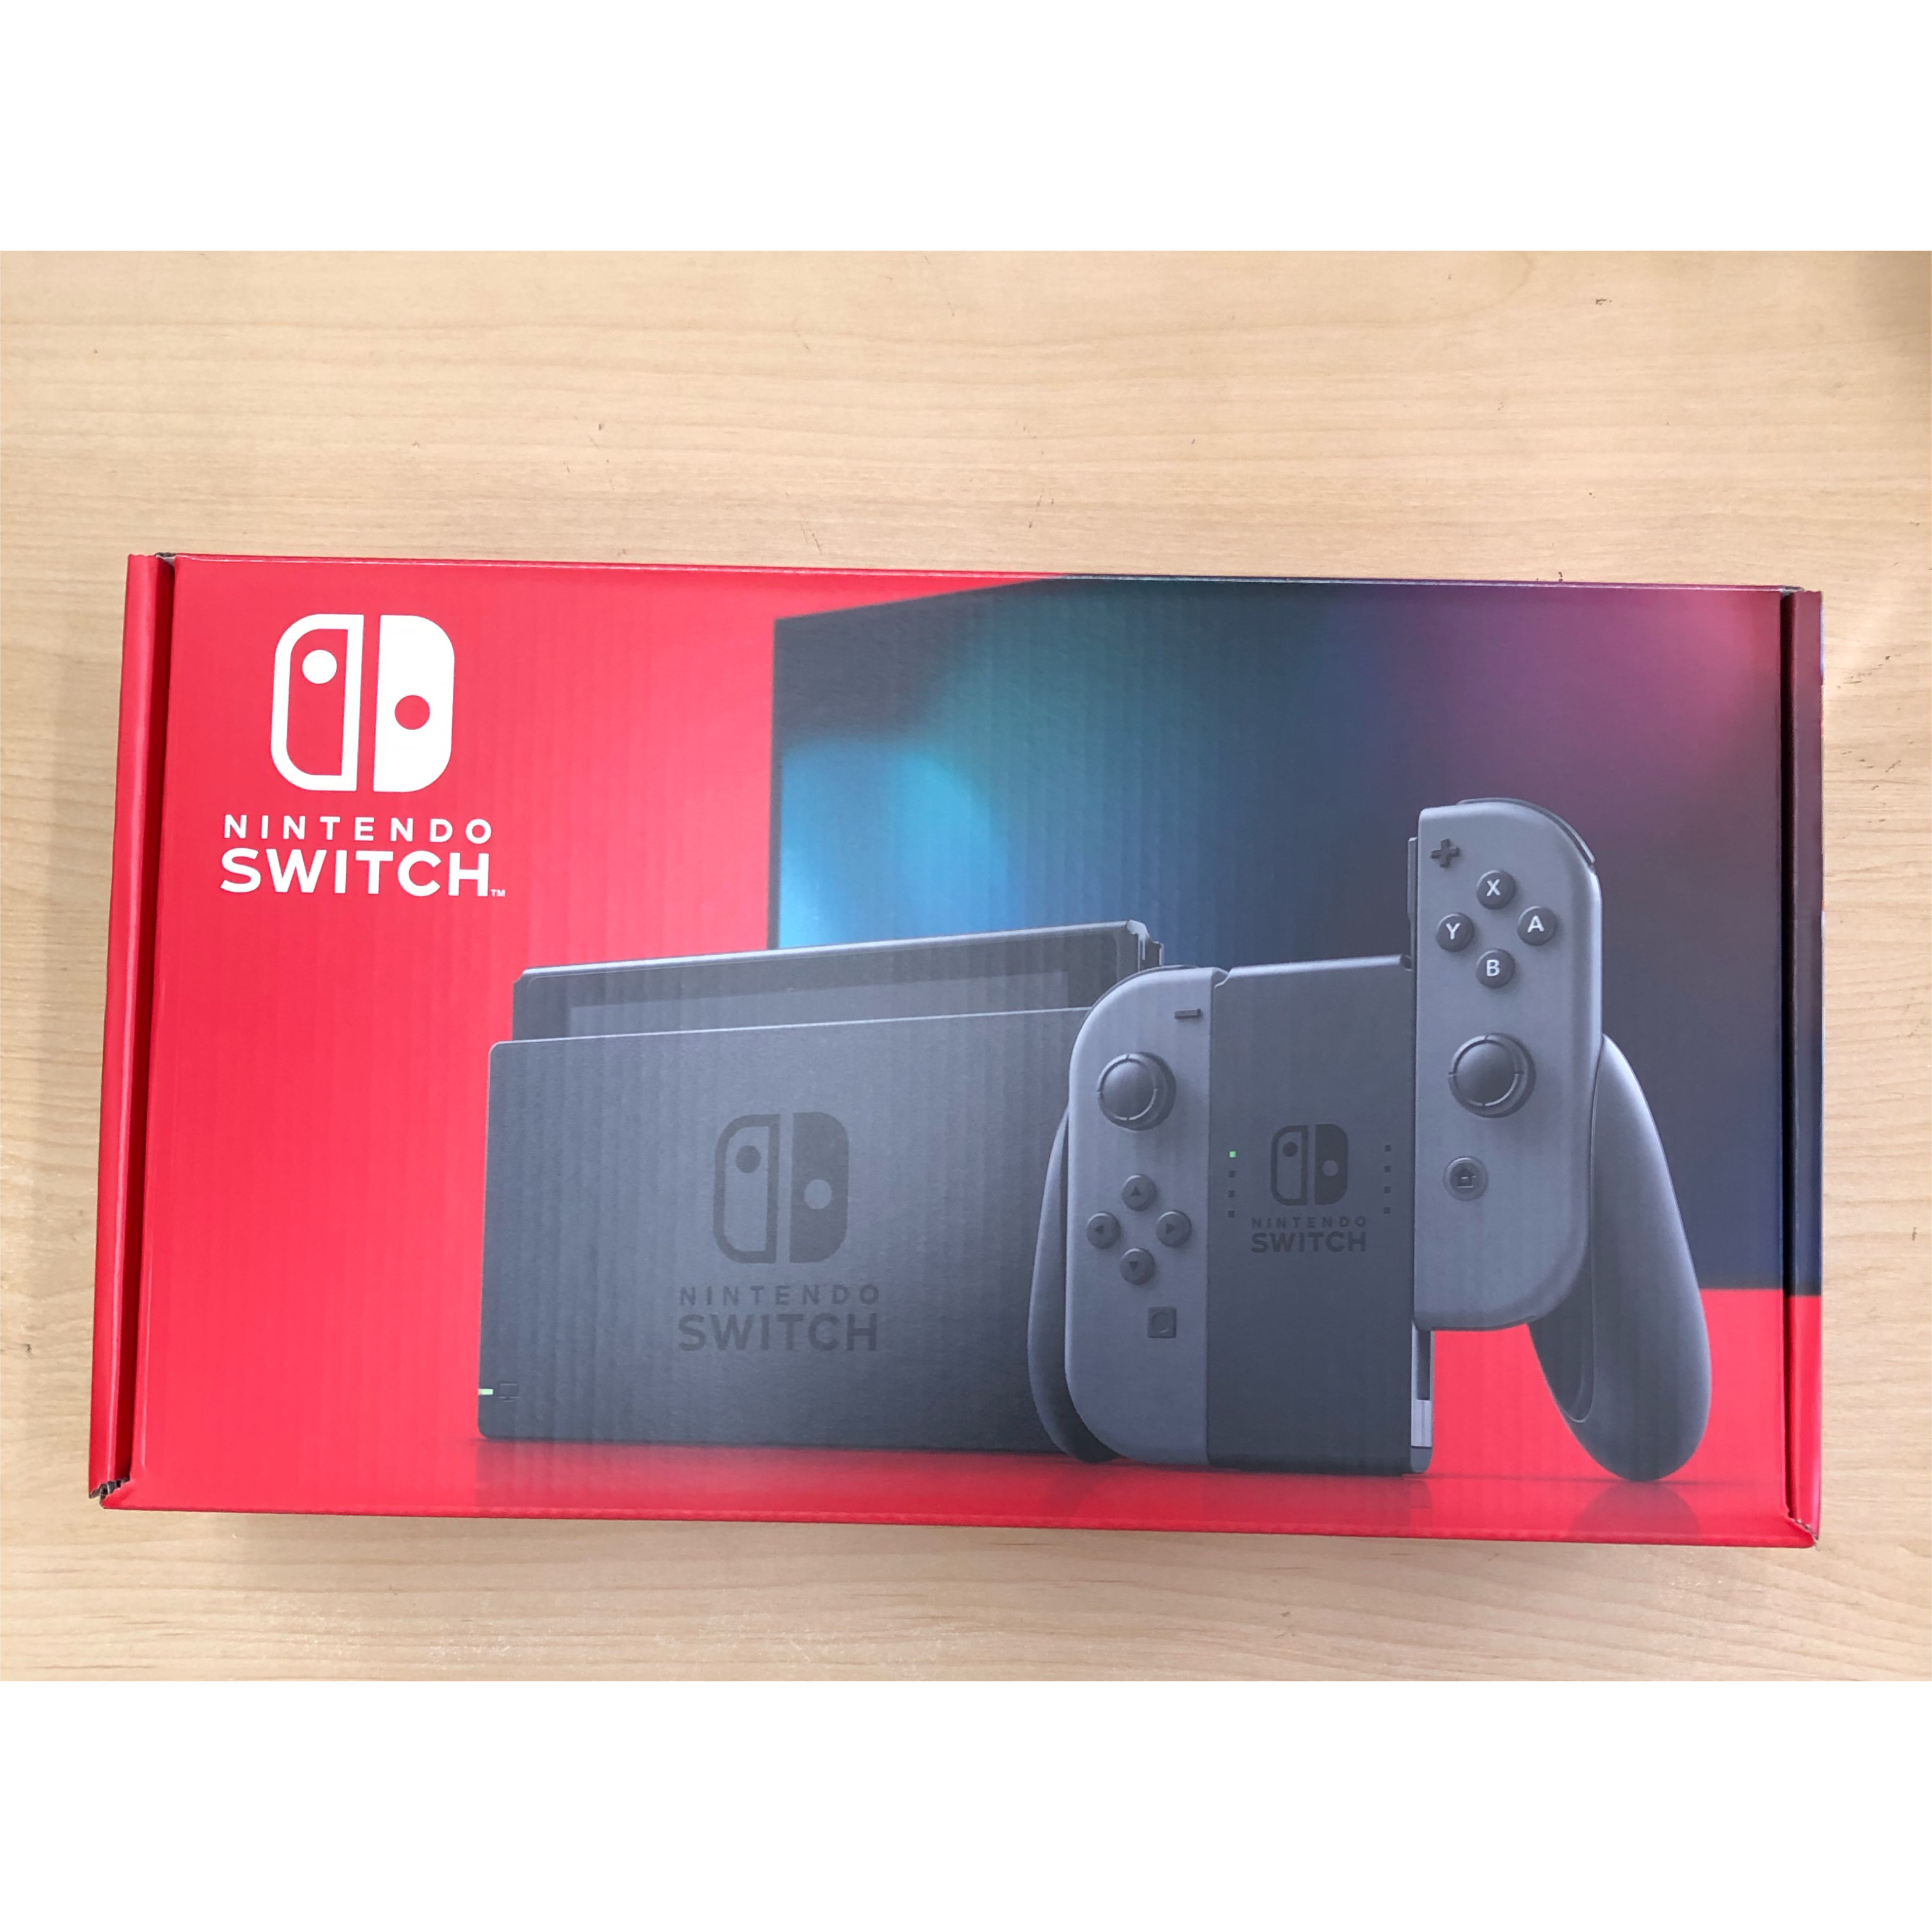 任天堂 ニンテンドー スイッチ Nintendo Switch Joy-Con (L) | スマホ・携帯・iPhone高価買取のモバックス